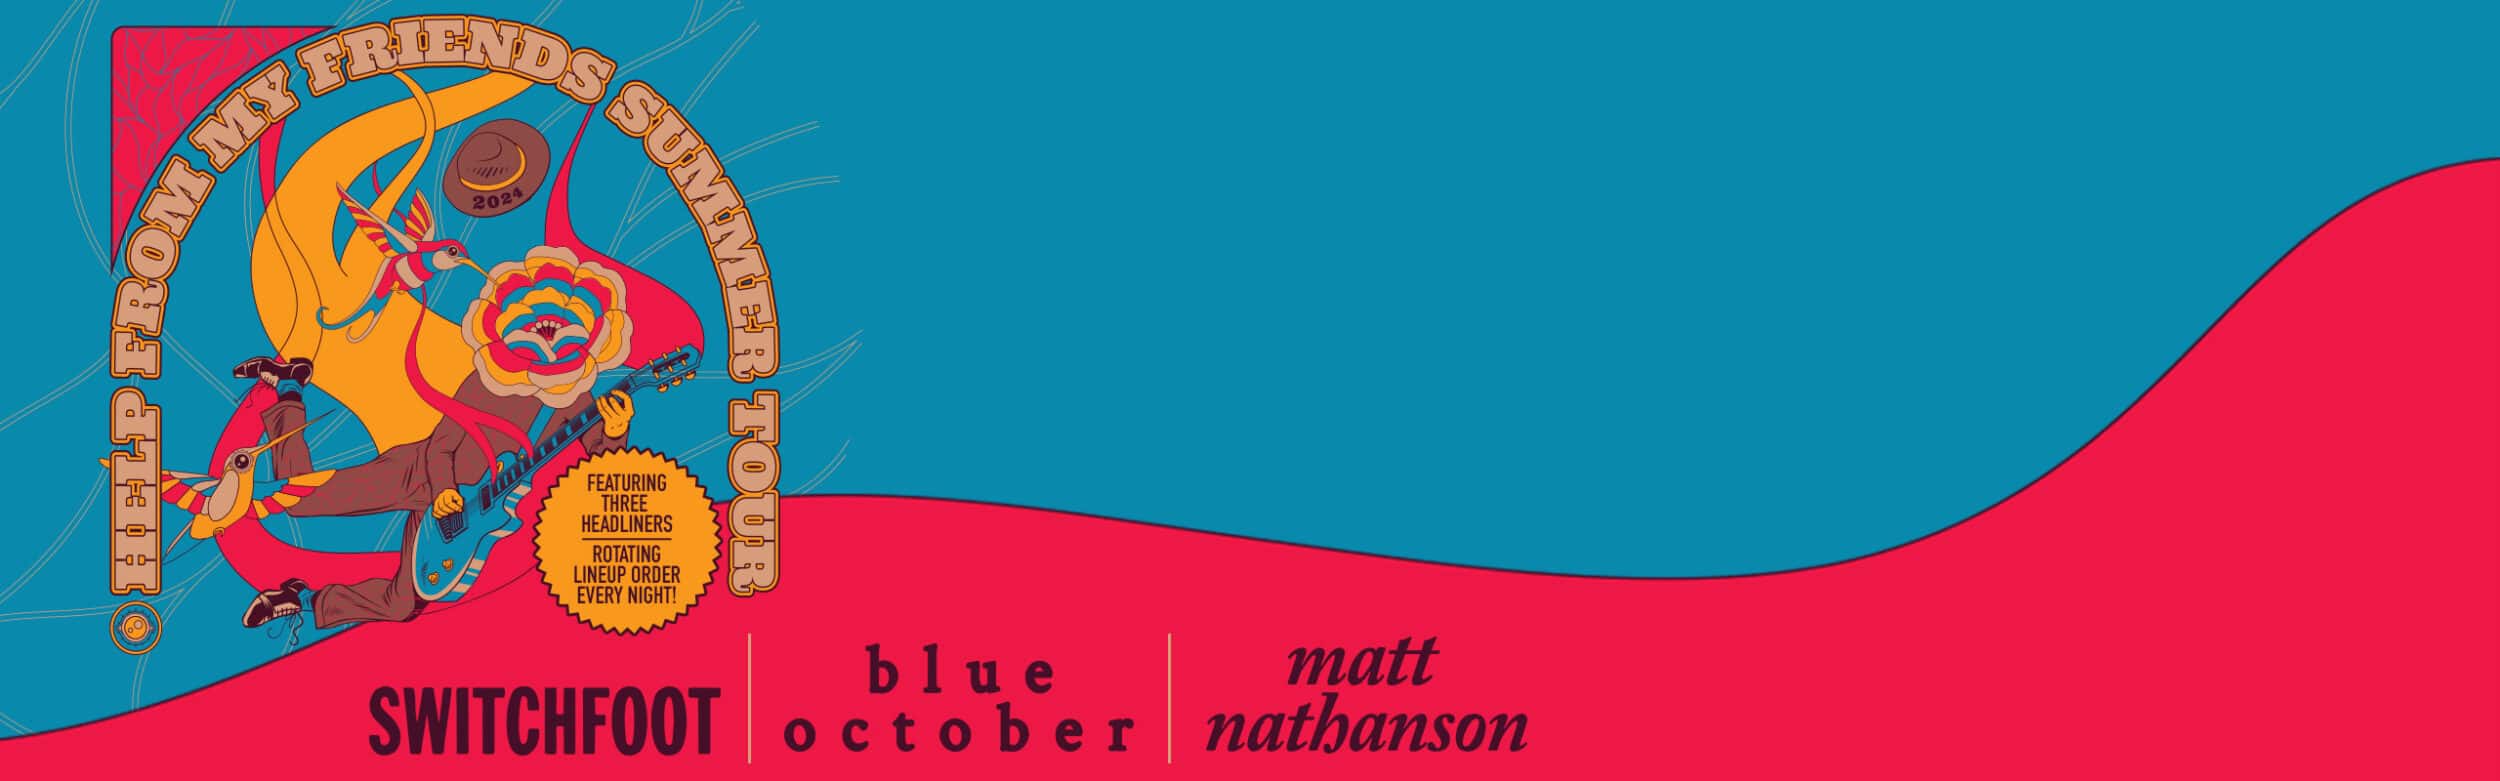 Switchfoot, Blue October, & Matt Nathanson